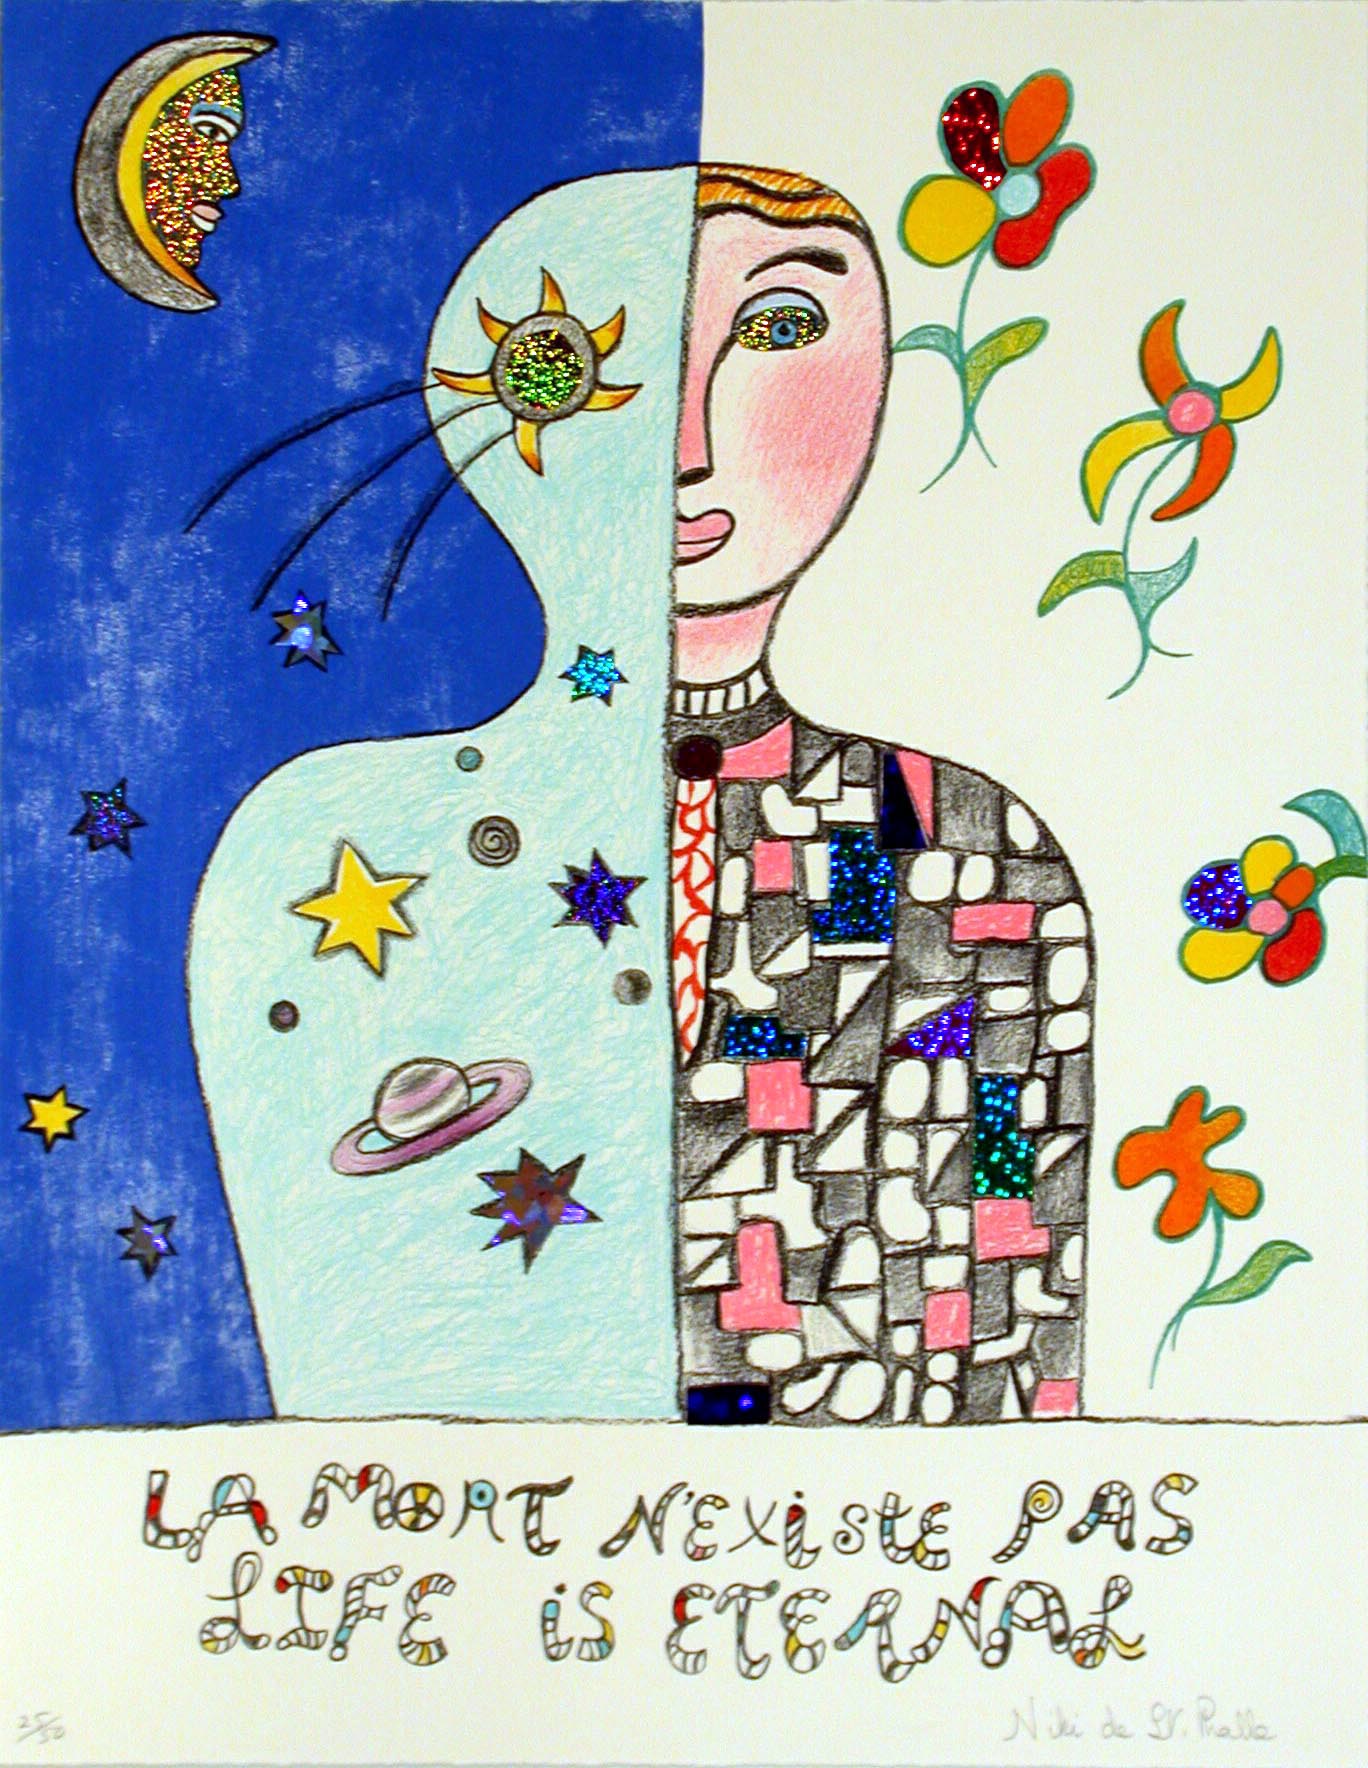 Exposition Niki de Saint Phalle aux Abattoirs de Toulouse